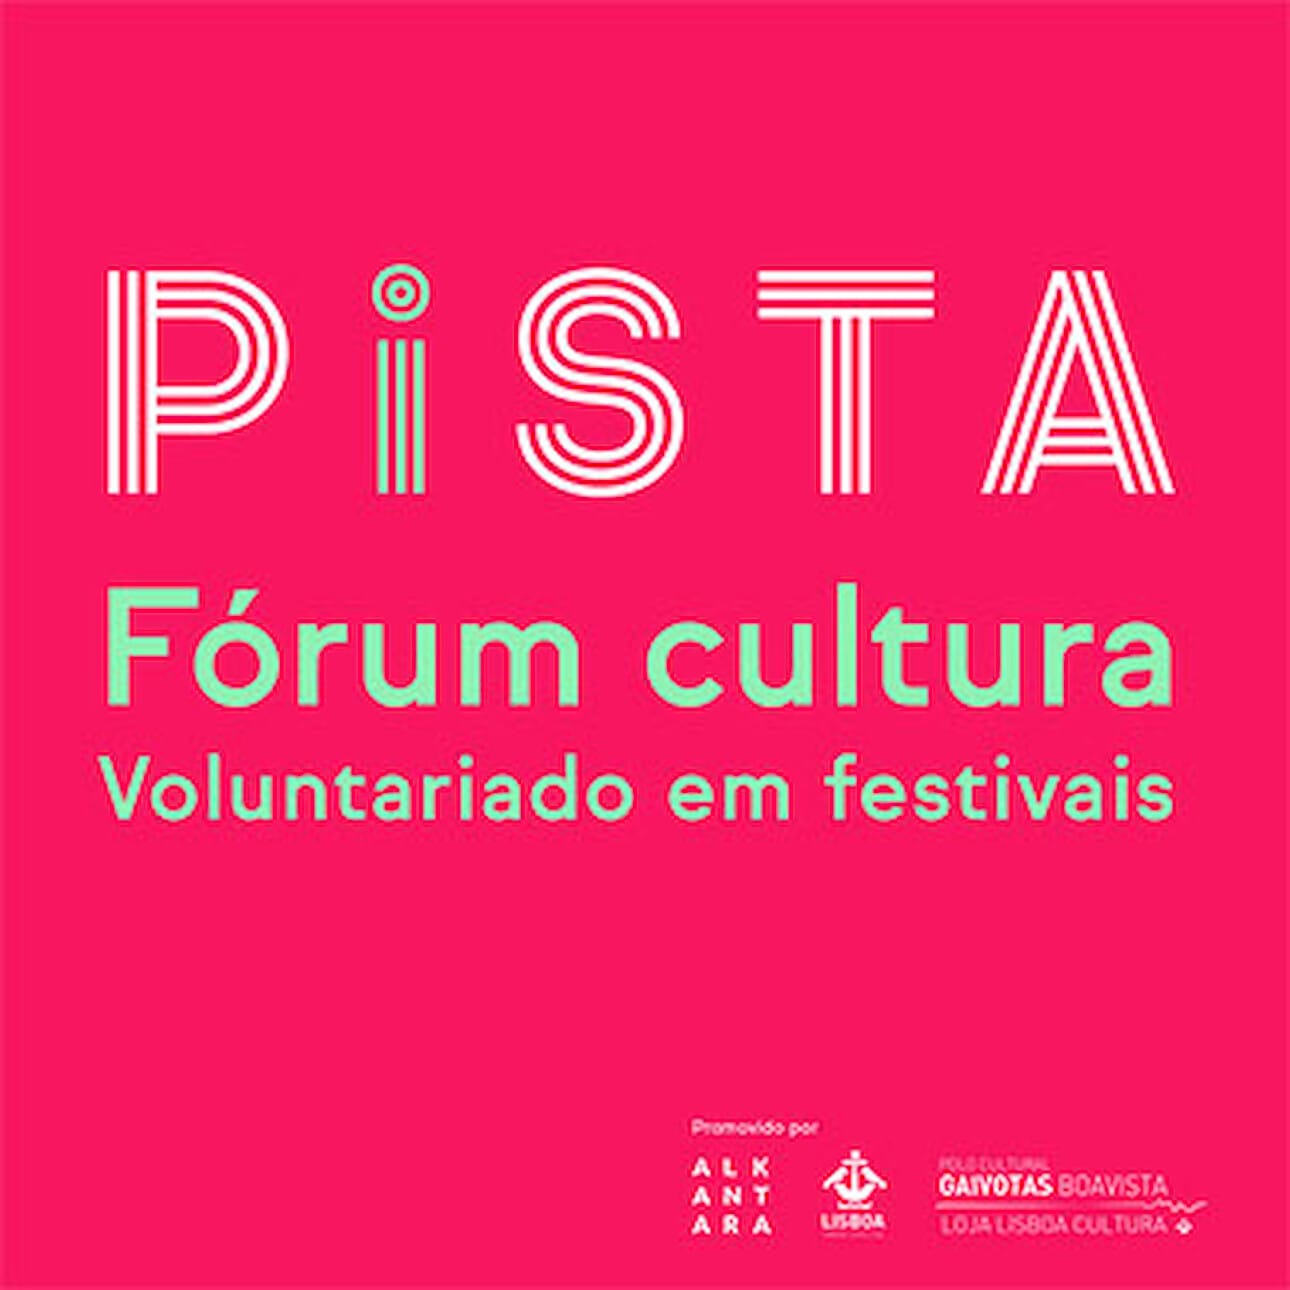 ALKANARA - Fórum Cultura: Voluntariado em festivais